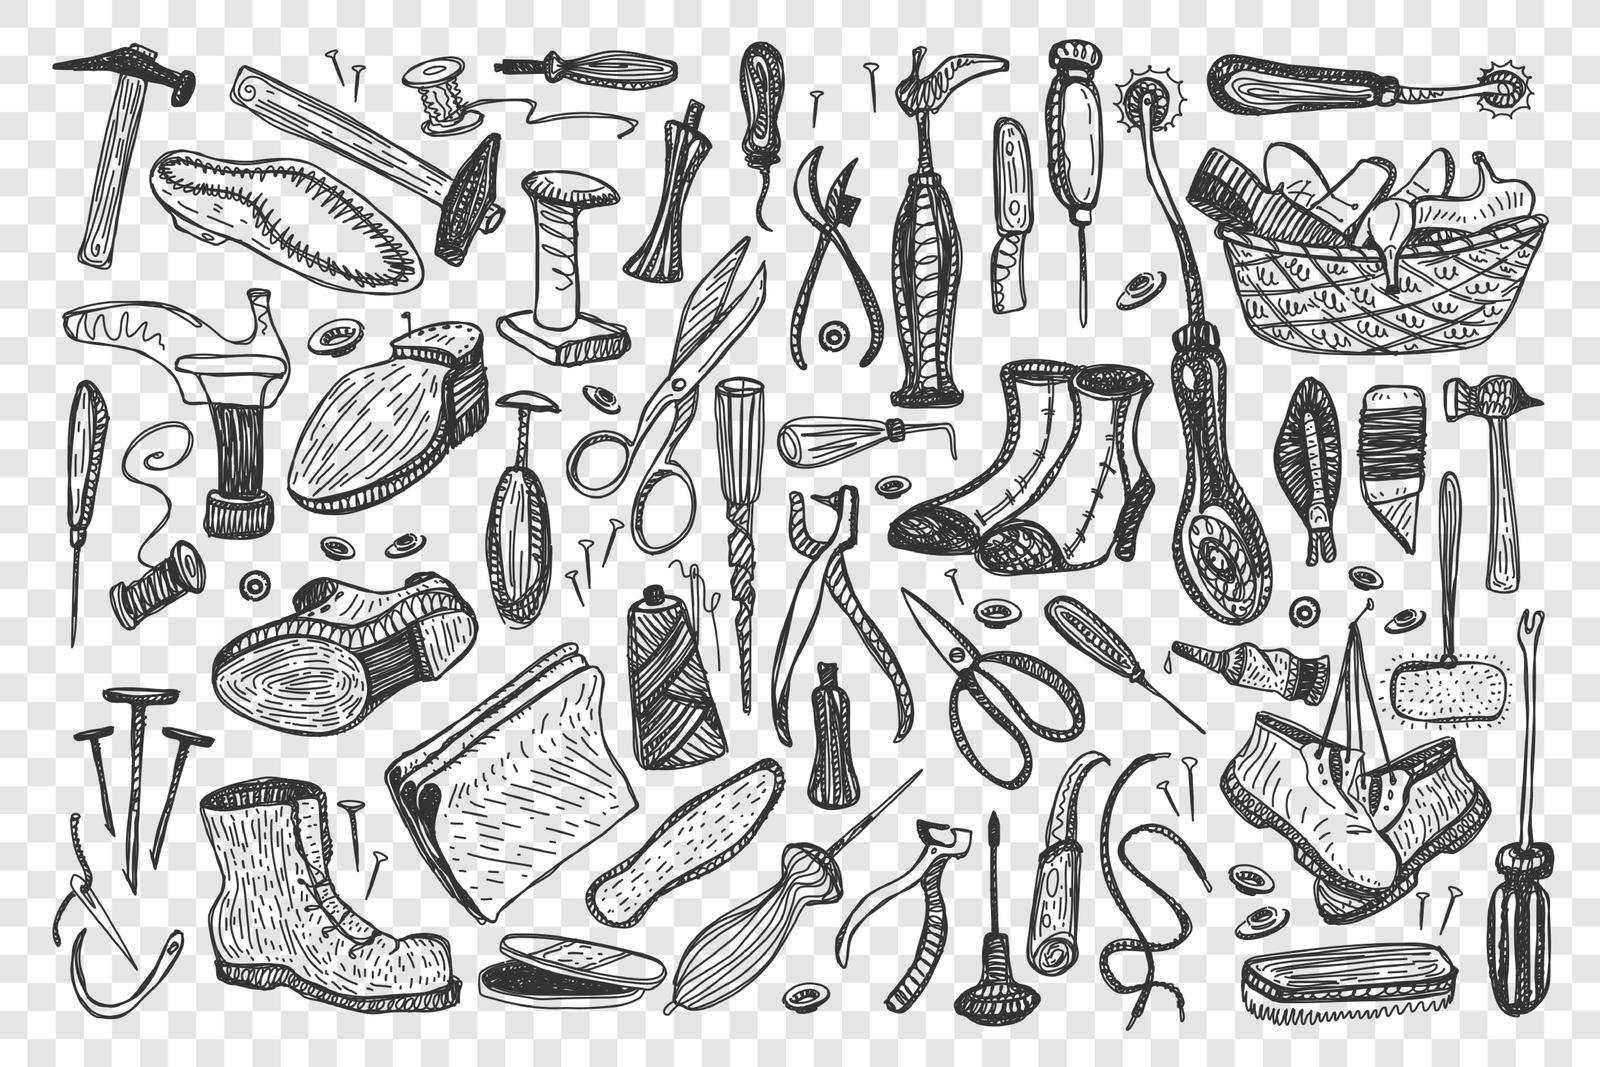 Shoemaking hand drawn doodle set by Vasilyeva